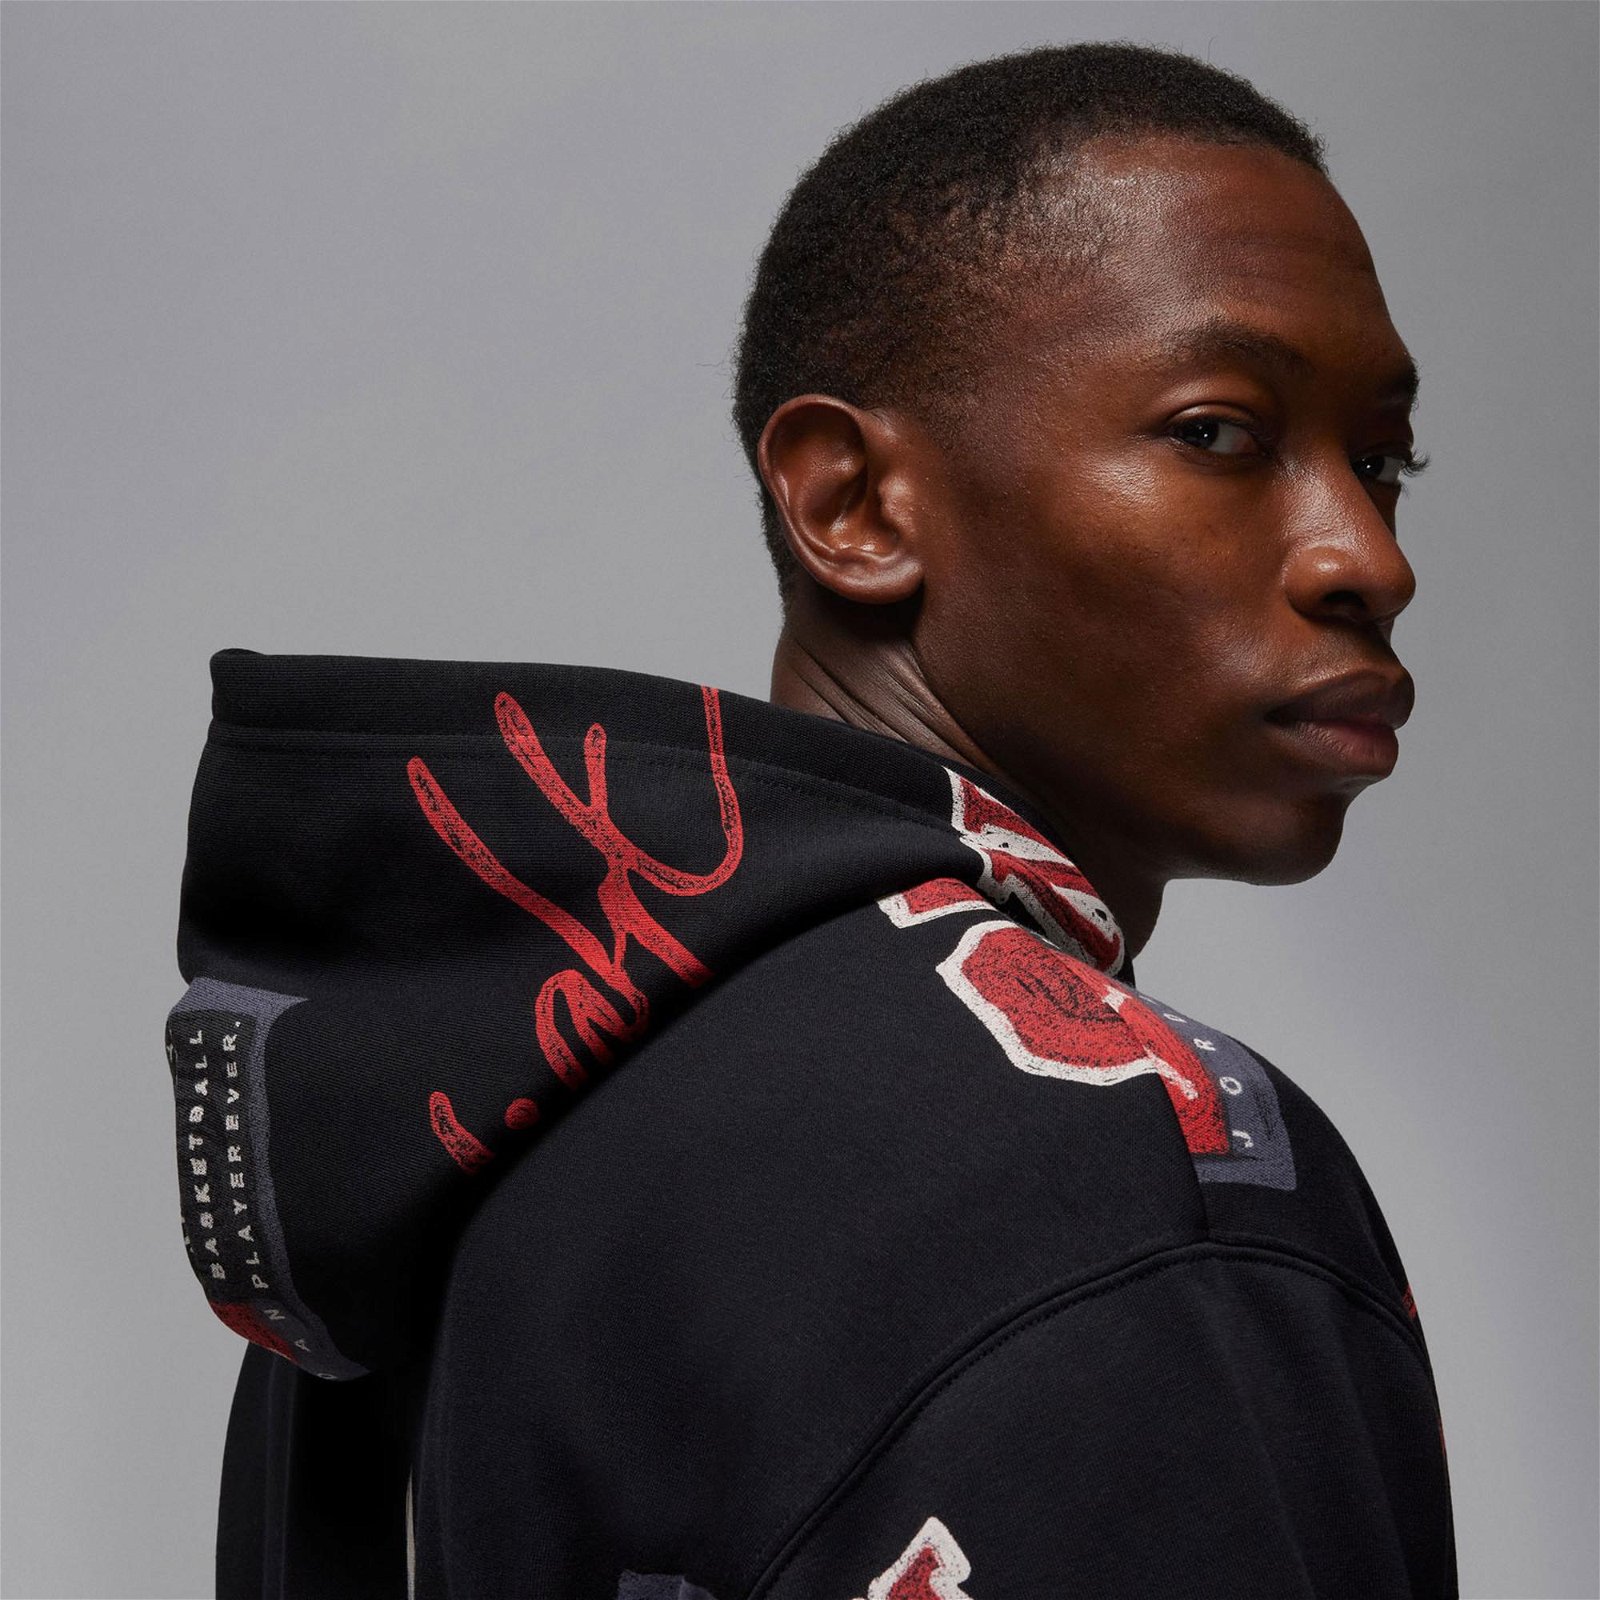 Jordan Essentials All Over Print Fleee Erkek Siyah Sweatshirt